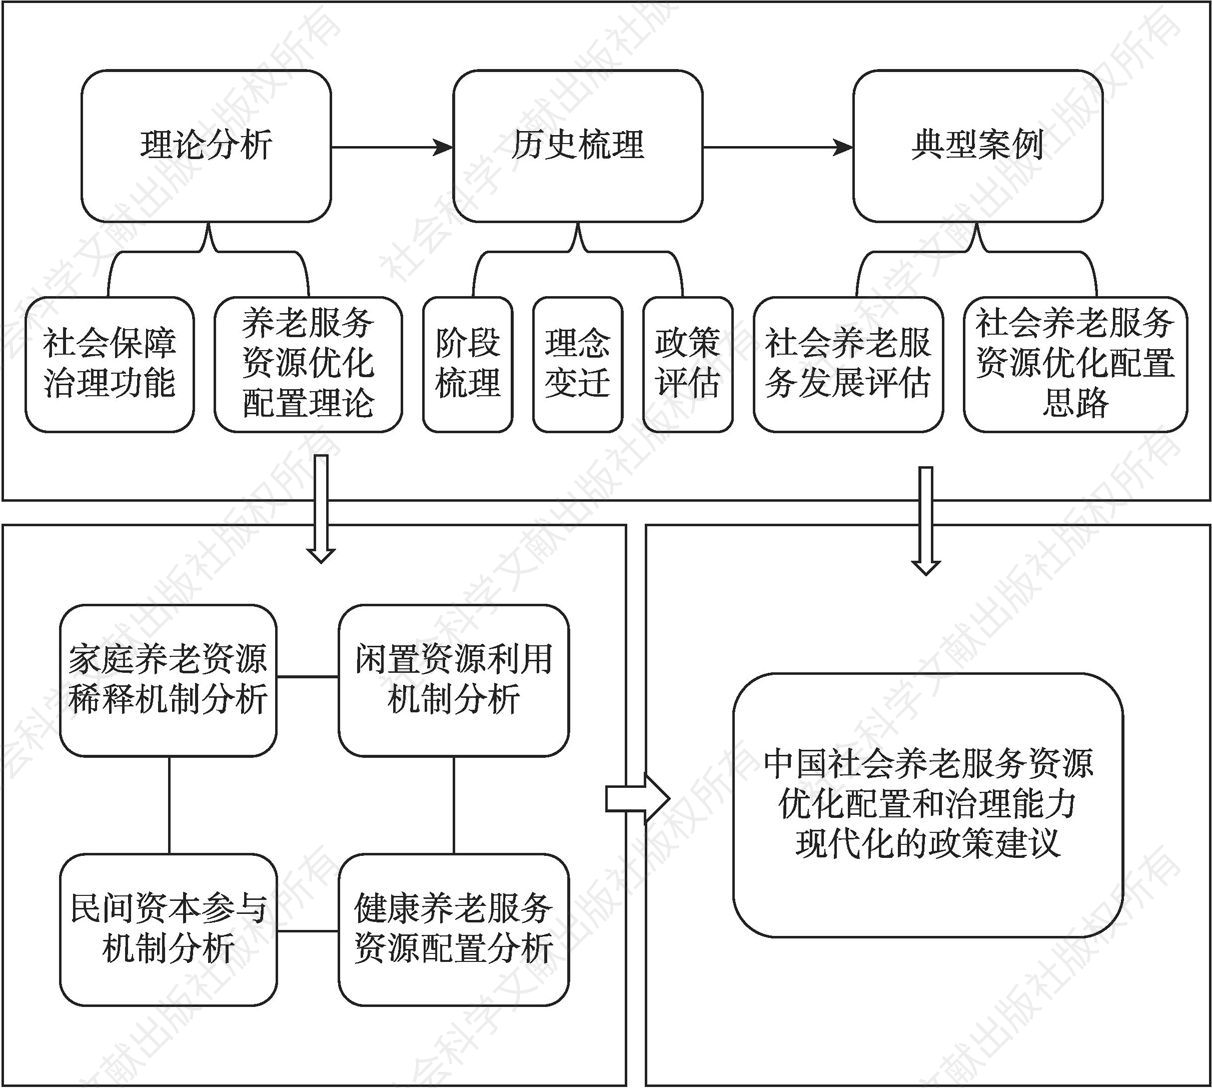 图1-1 中国社会养老服务资源优化配置研究技术路线